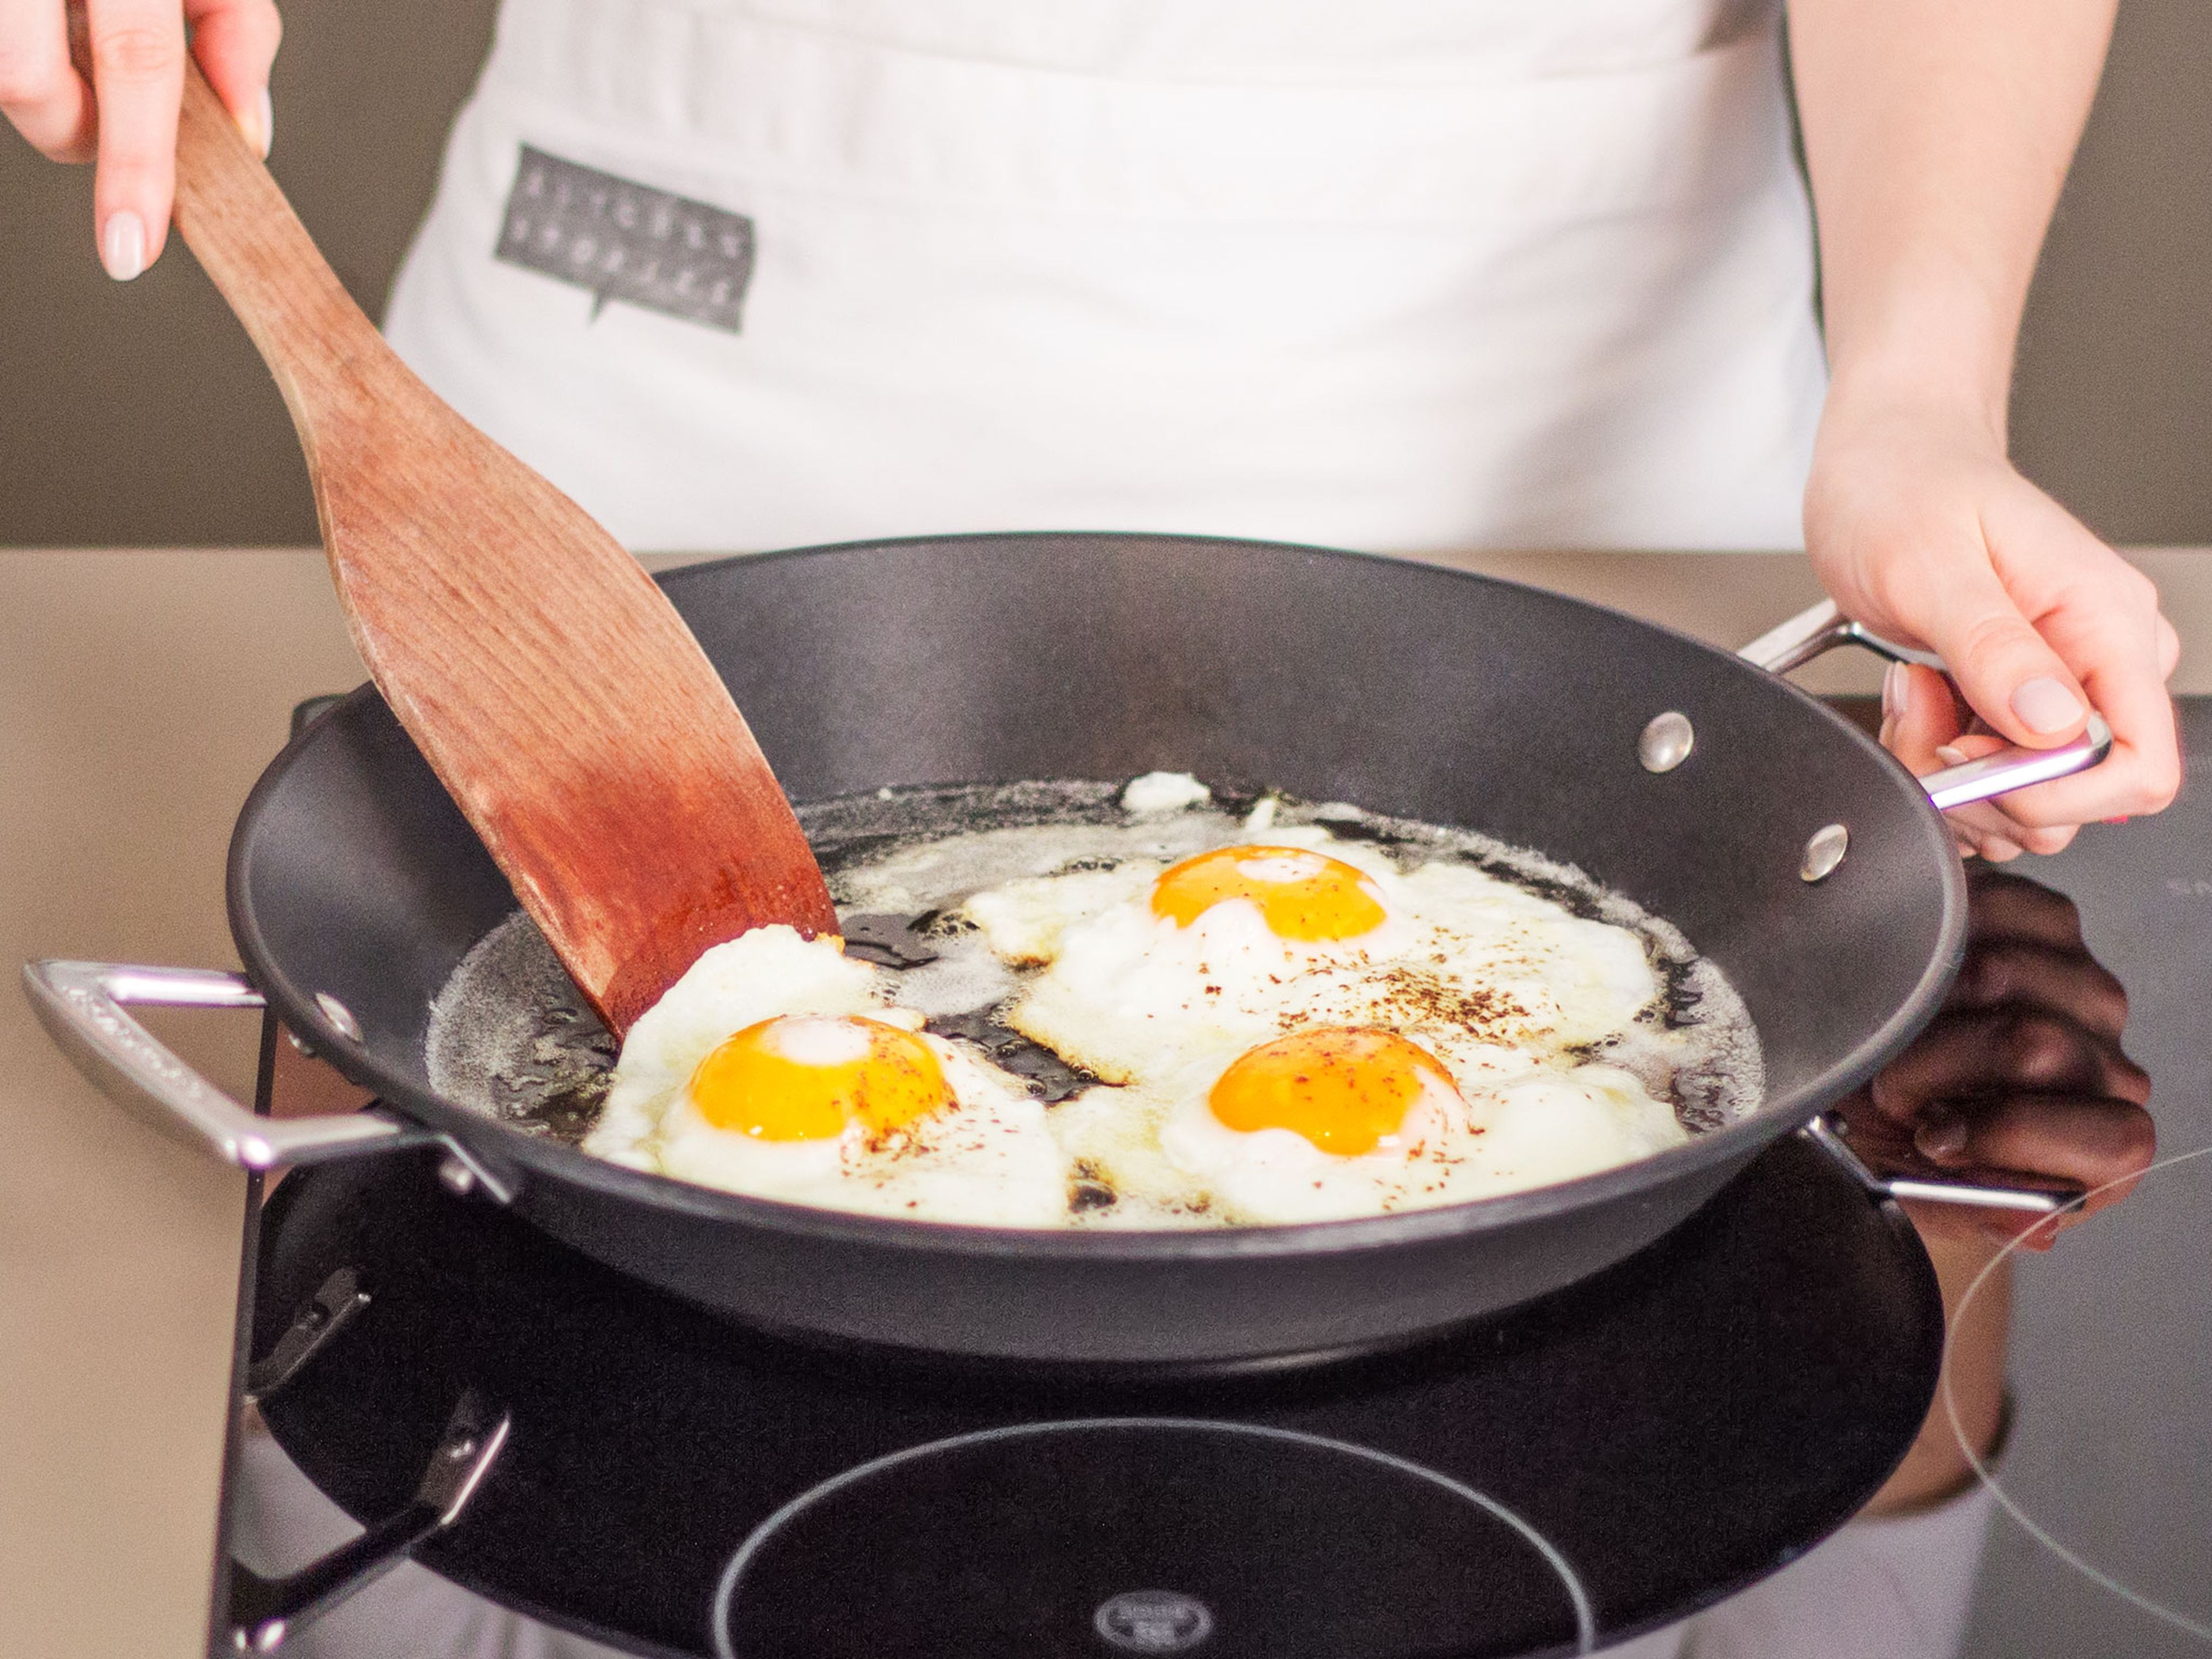 Eier in einer separaten Pfanne bei mittlerer Hitze mit etwas Pflanzenöl ca. 2 – 4 Min. braten, bis das Eiweiß fest ist. Anschließend die gebratenen Eier in die Pfanne zu den Fleischbällchen geben. Zusammen mit unserer scharfen Chilisoße genießen.